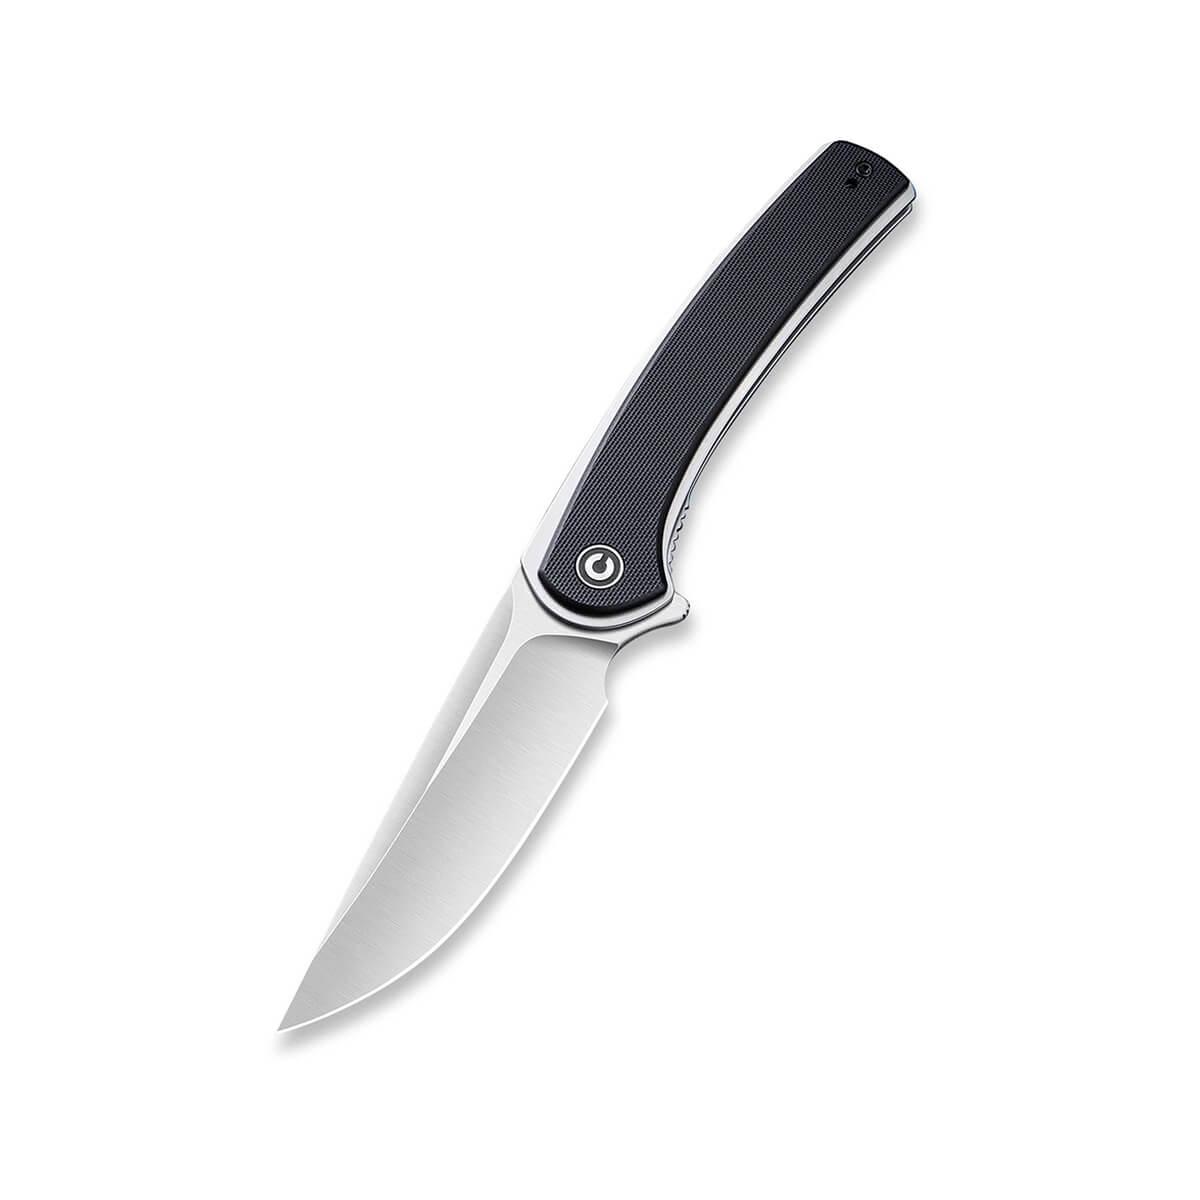  Asticus G10 Flipper Knife